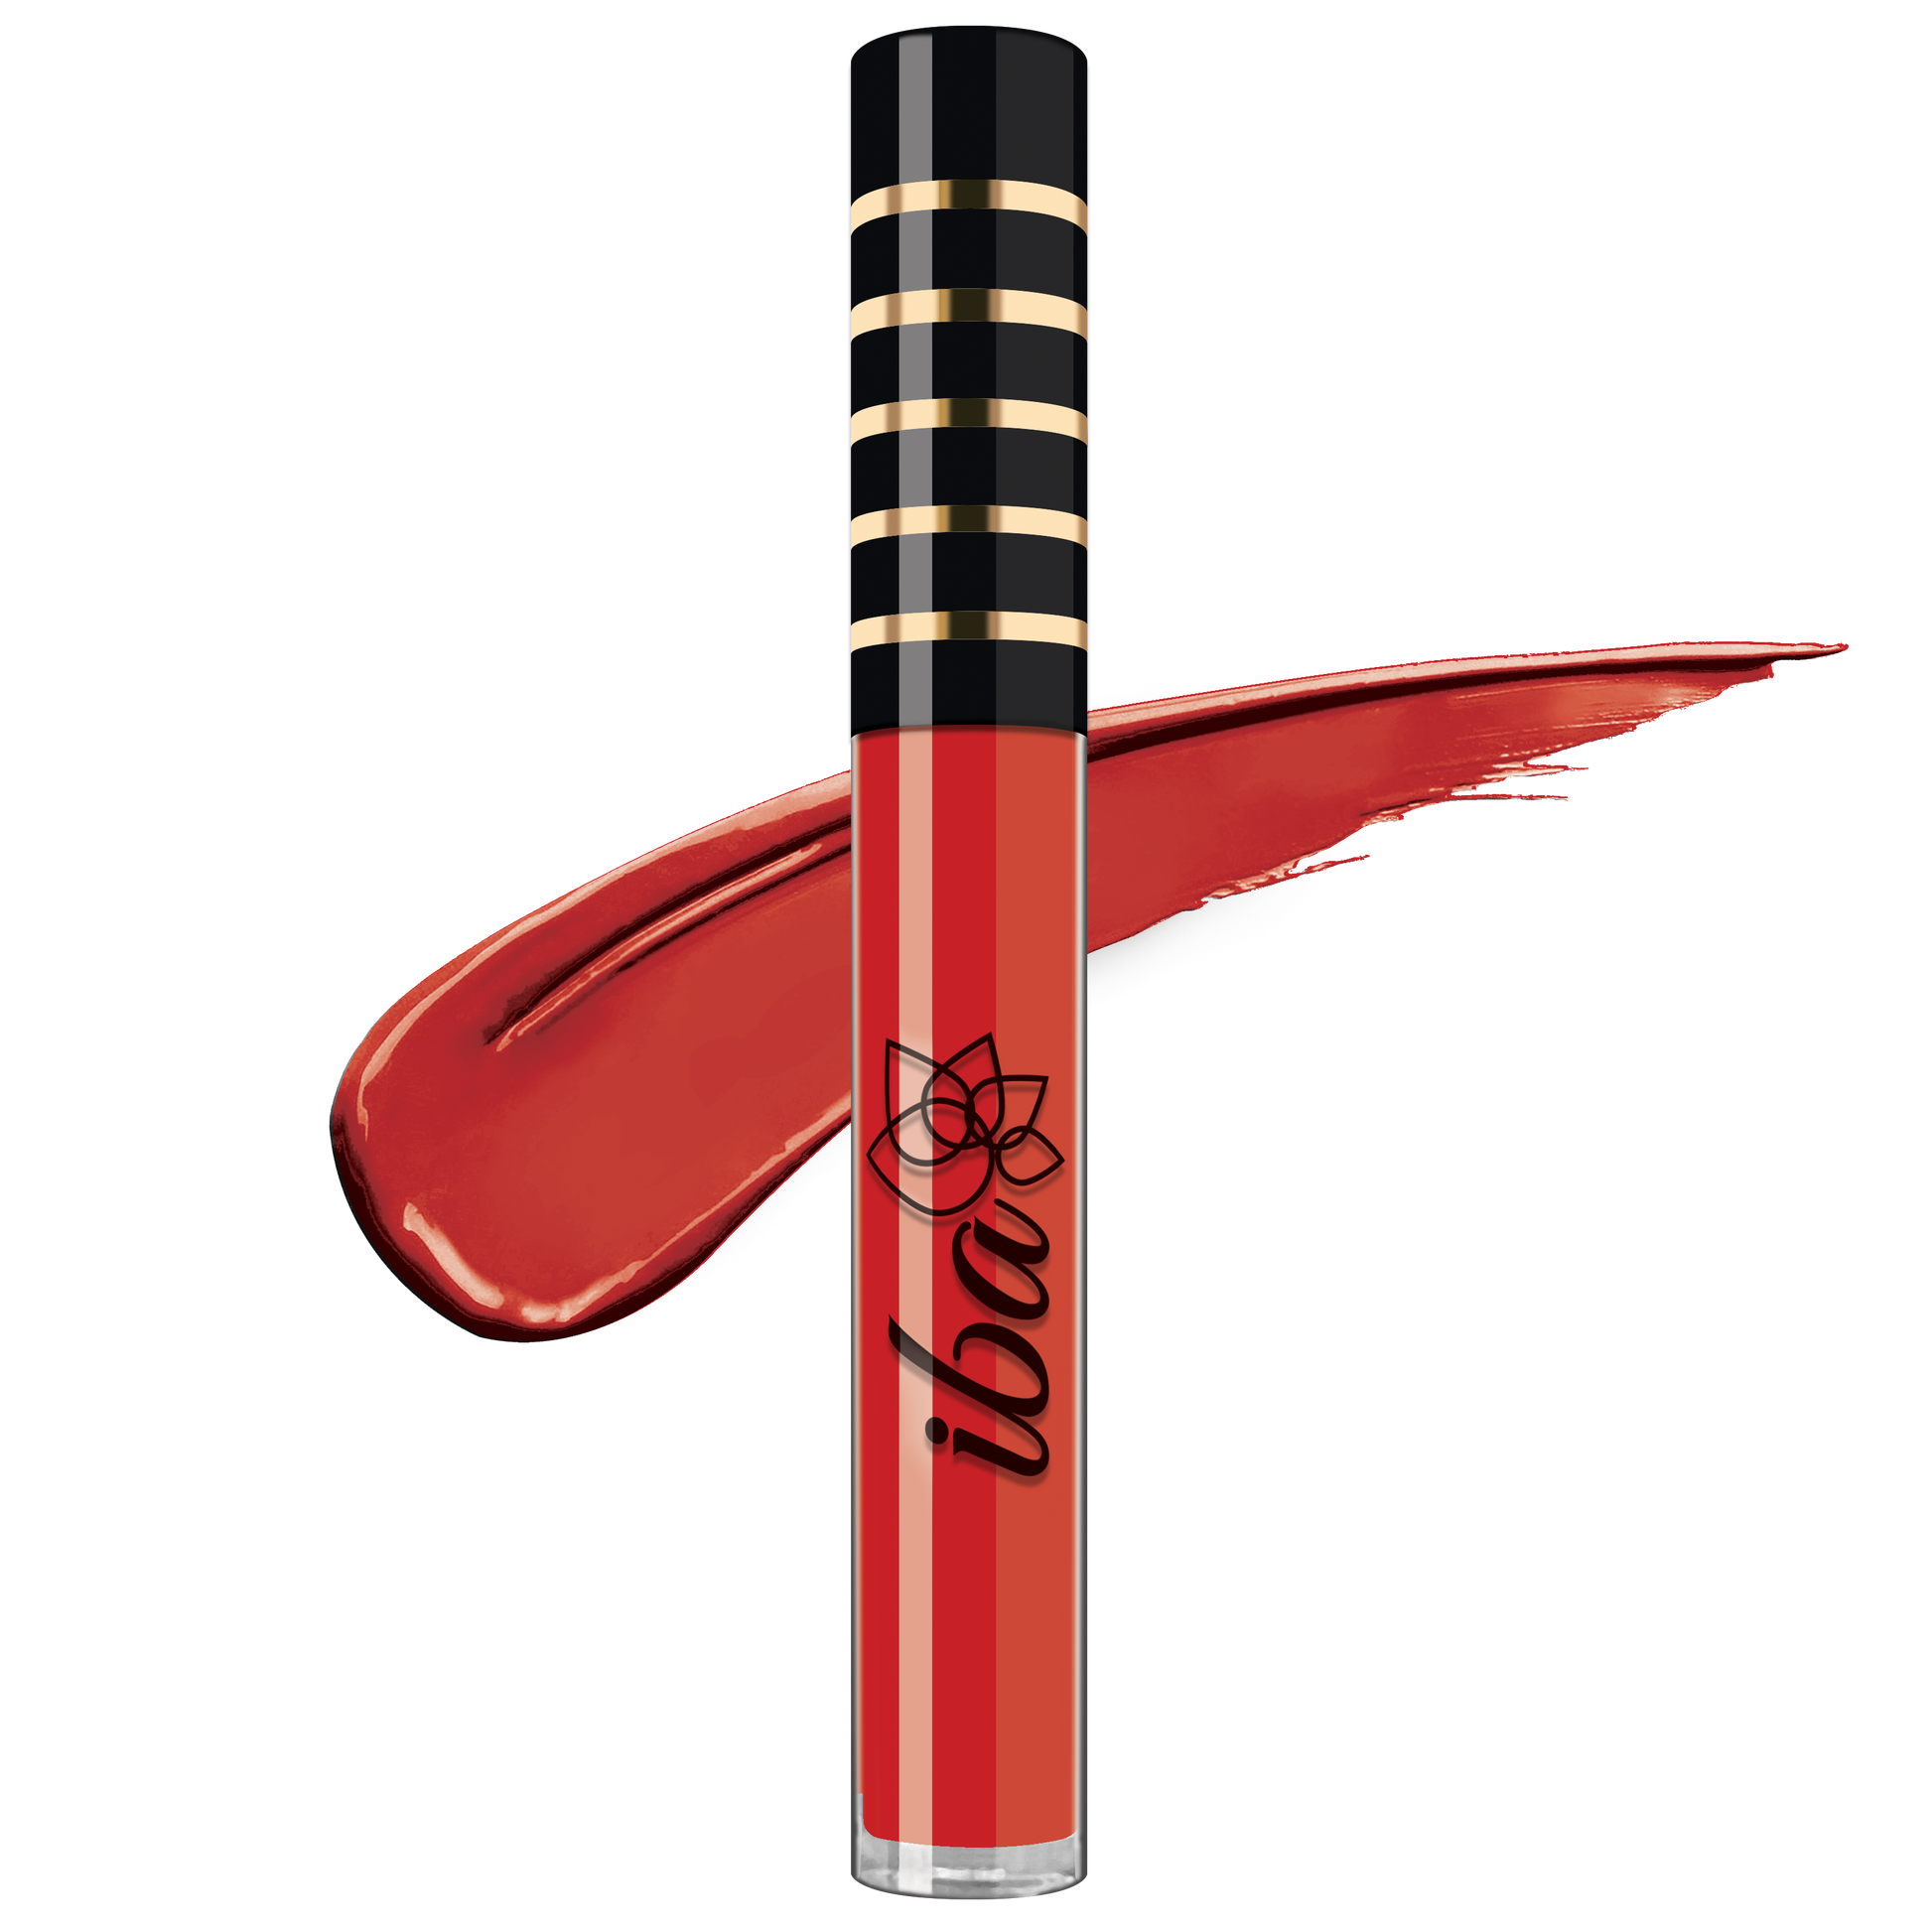 Iba Maxx Matte Liquid Lipstick Color Perfect Red